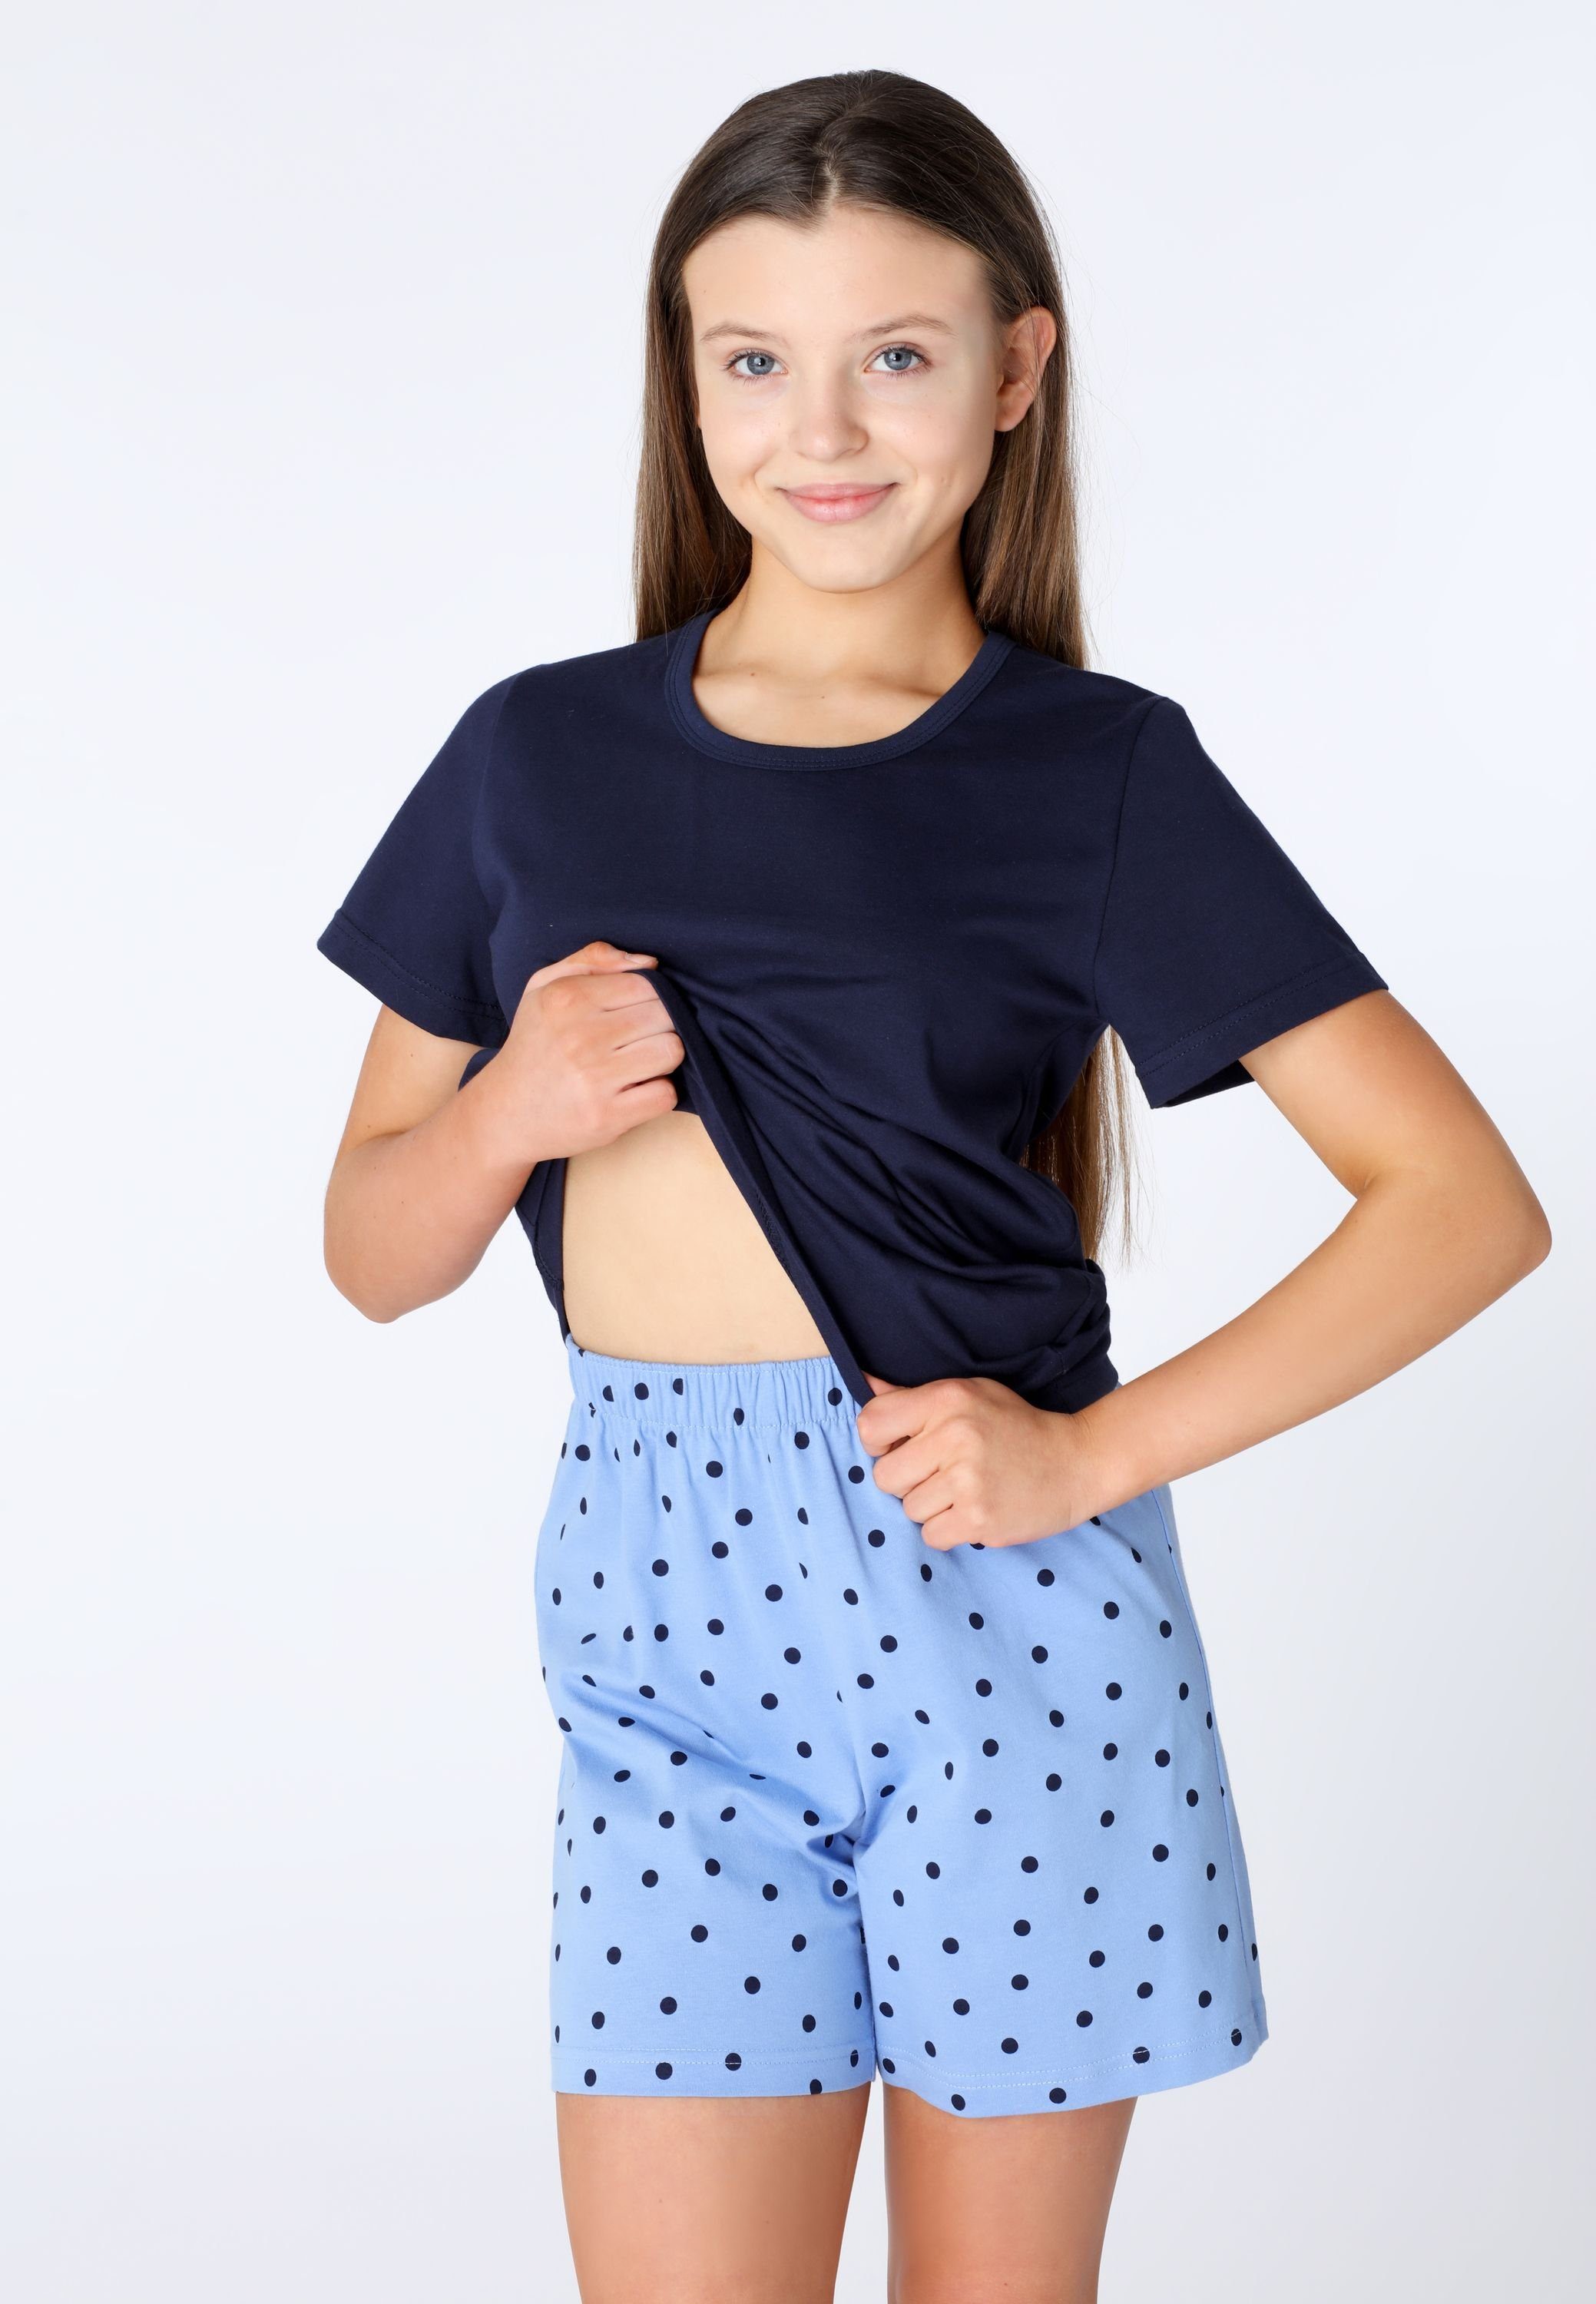 Marine/Blau/Punkte Style Mädchen MS10-265 Pyjama Set Kurz aus Baumwolle Schlafanzüge Schlafanzug Merry